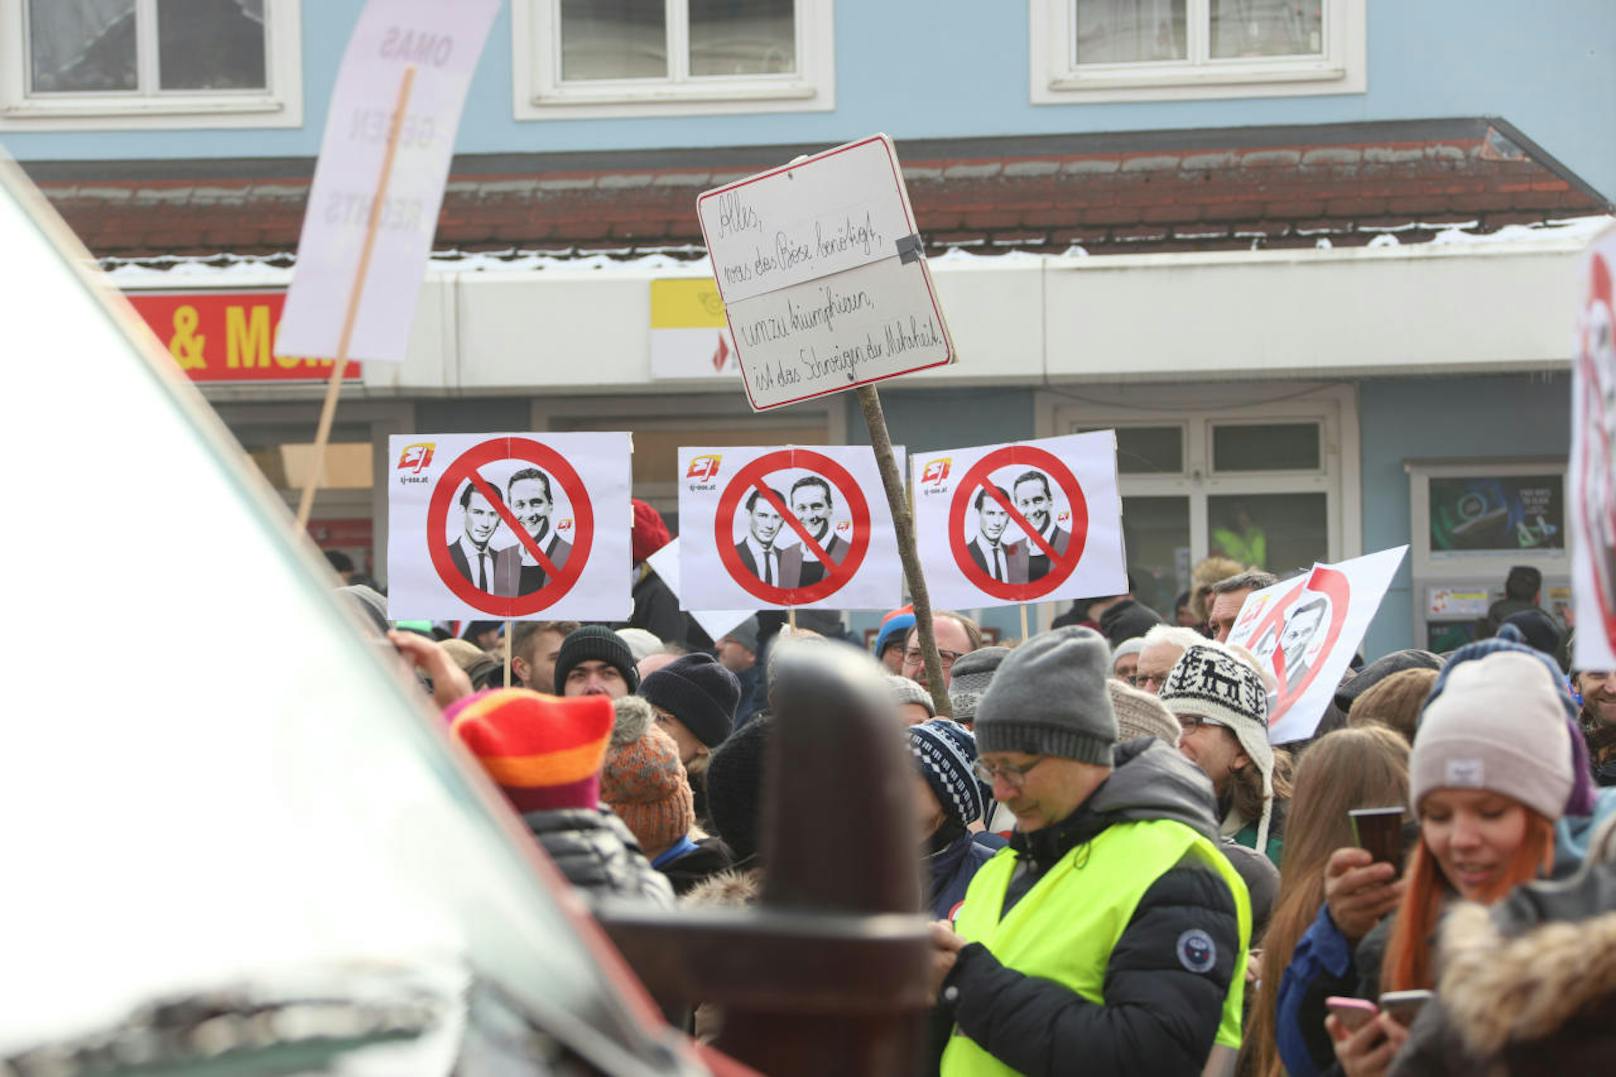 Der Protest gegen den rechten Kongress "Verteidiger Europas" zählte - laut Veranstalter - rund 450 Personen.